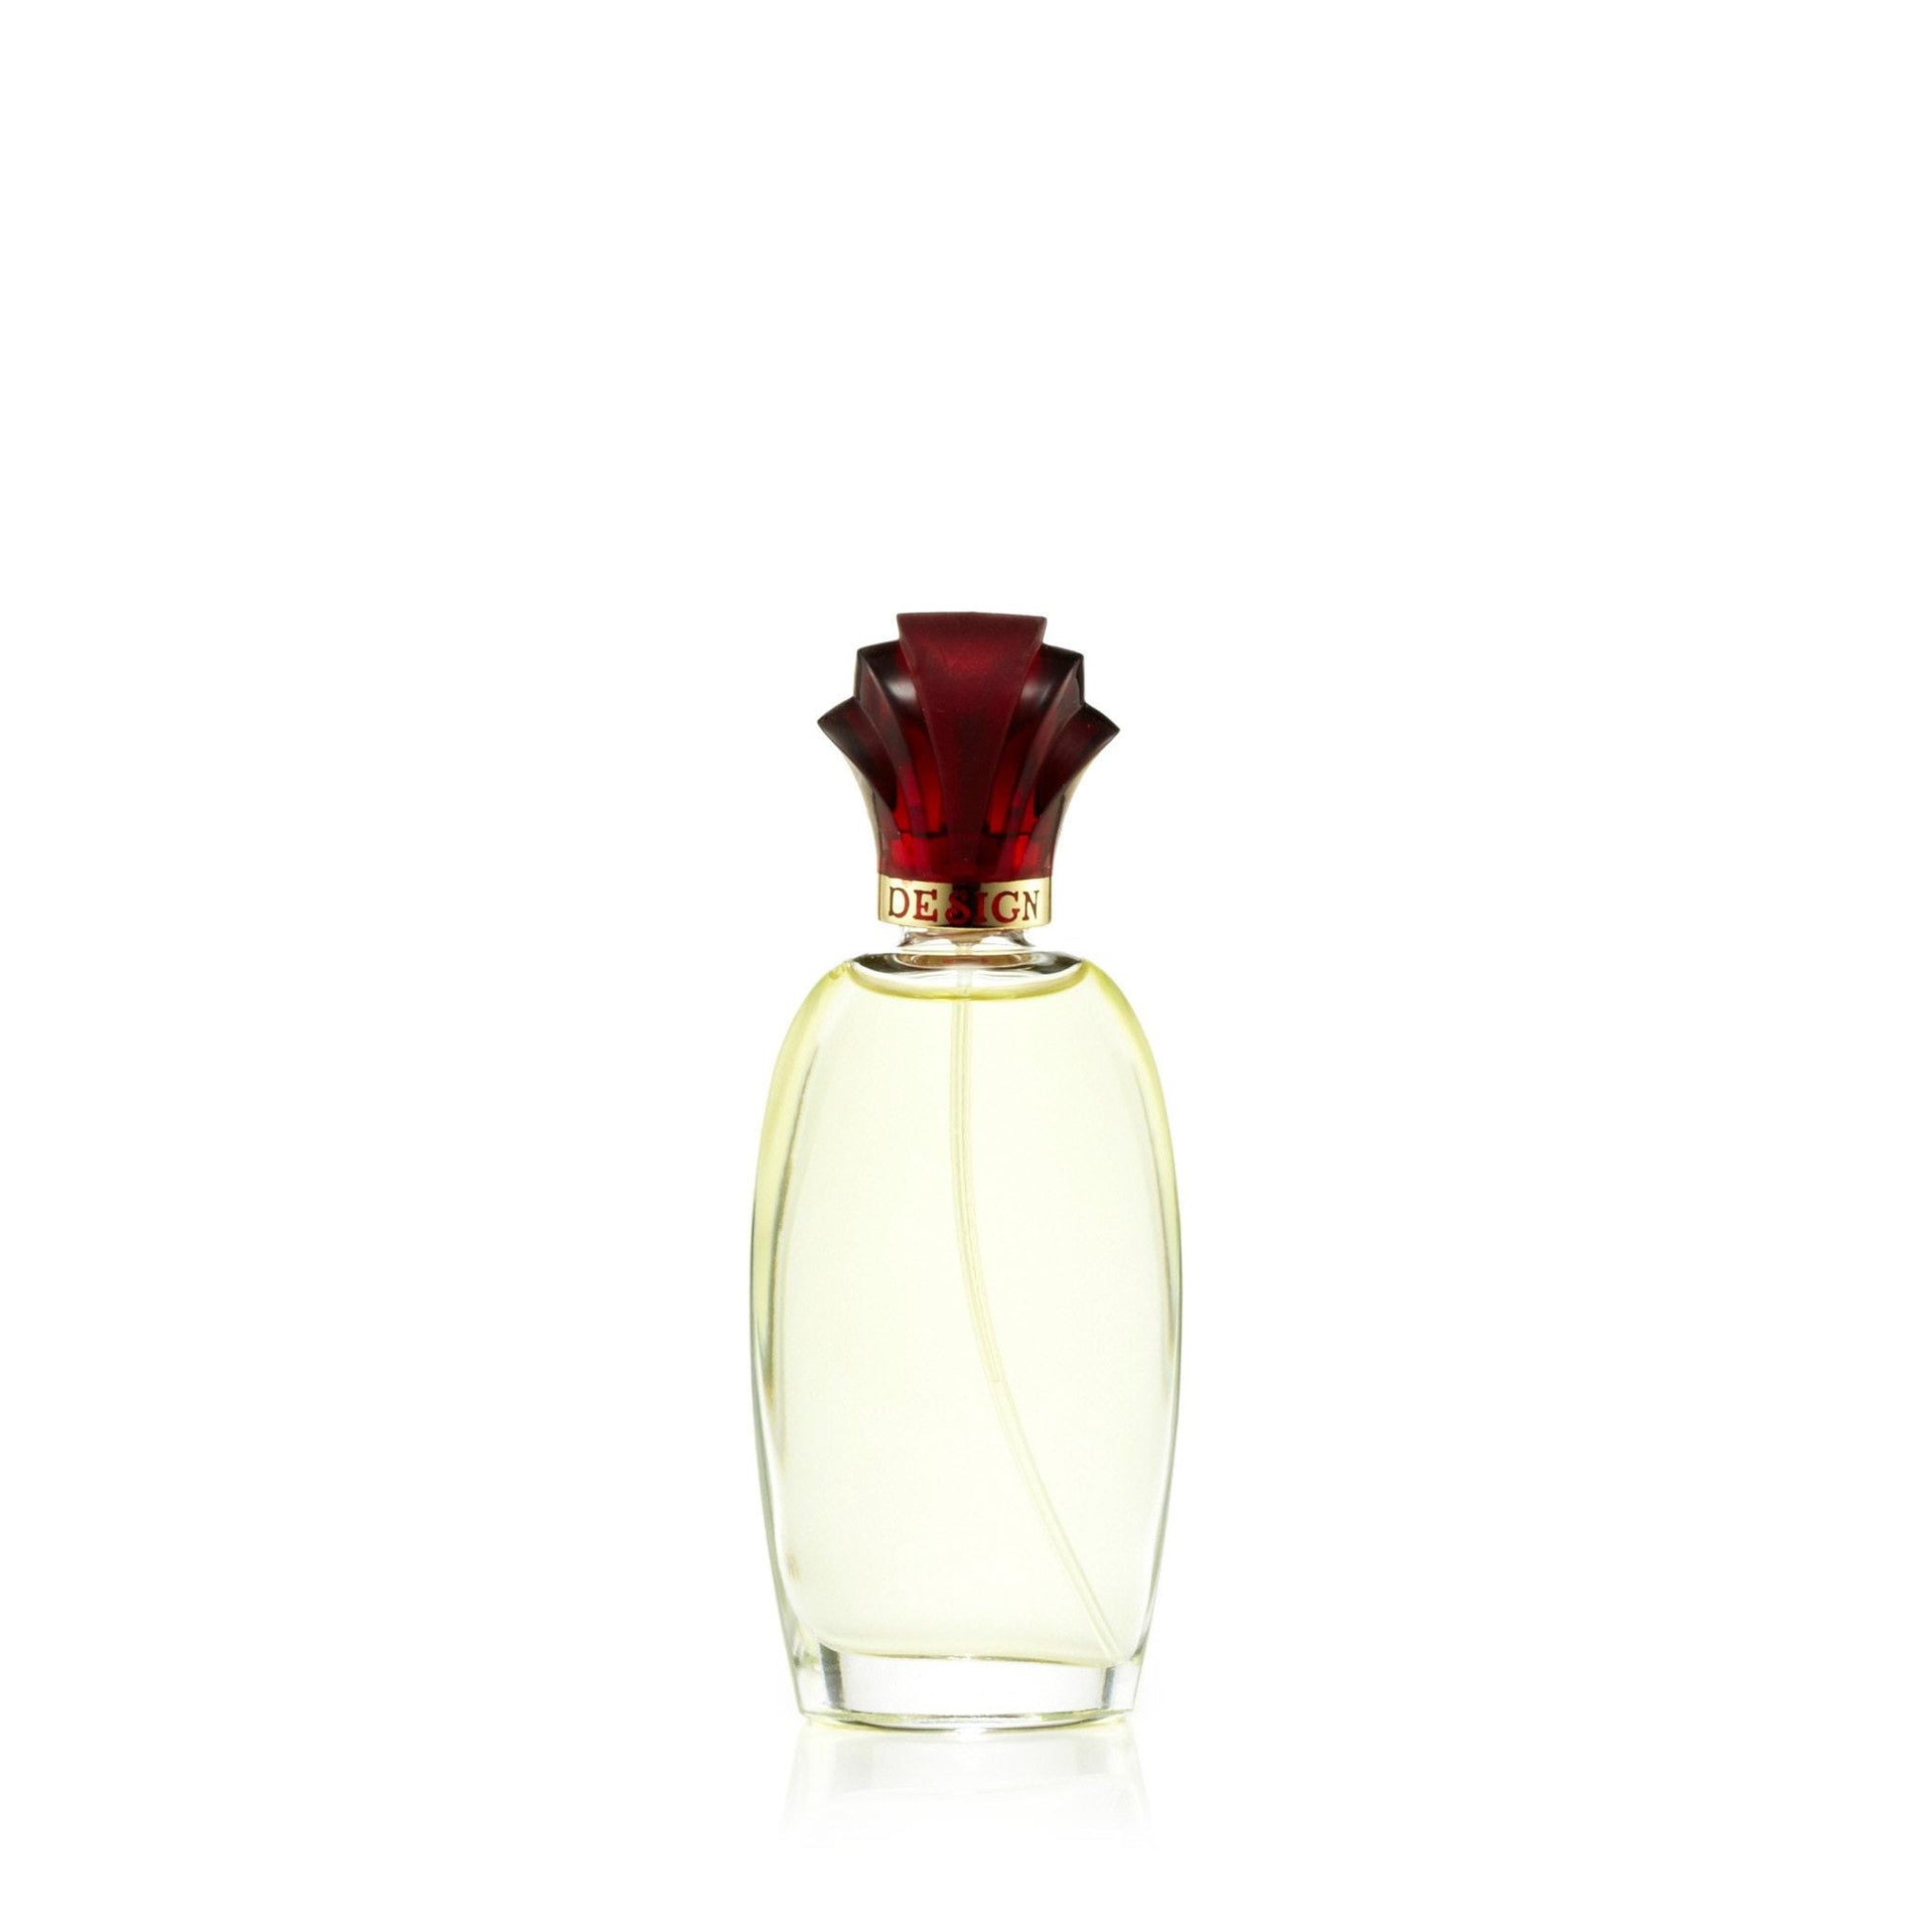 Design Eau de Parfum Spray for Women by Paul Sebastian, Product image 2